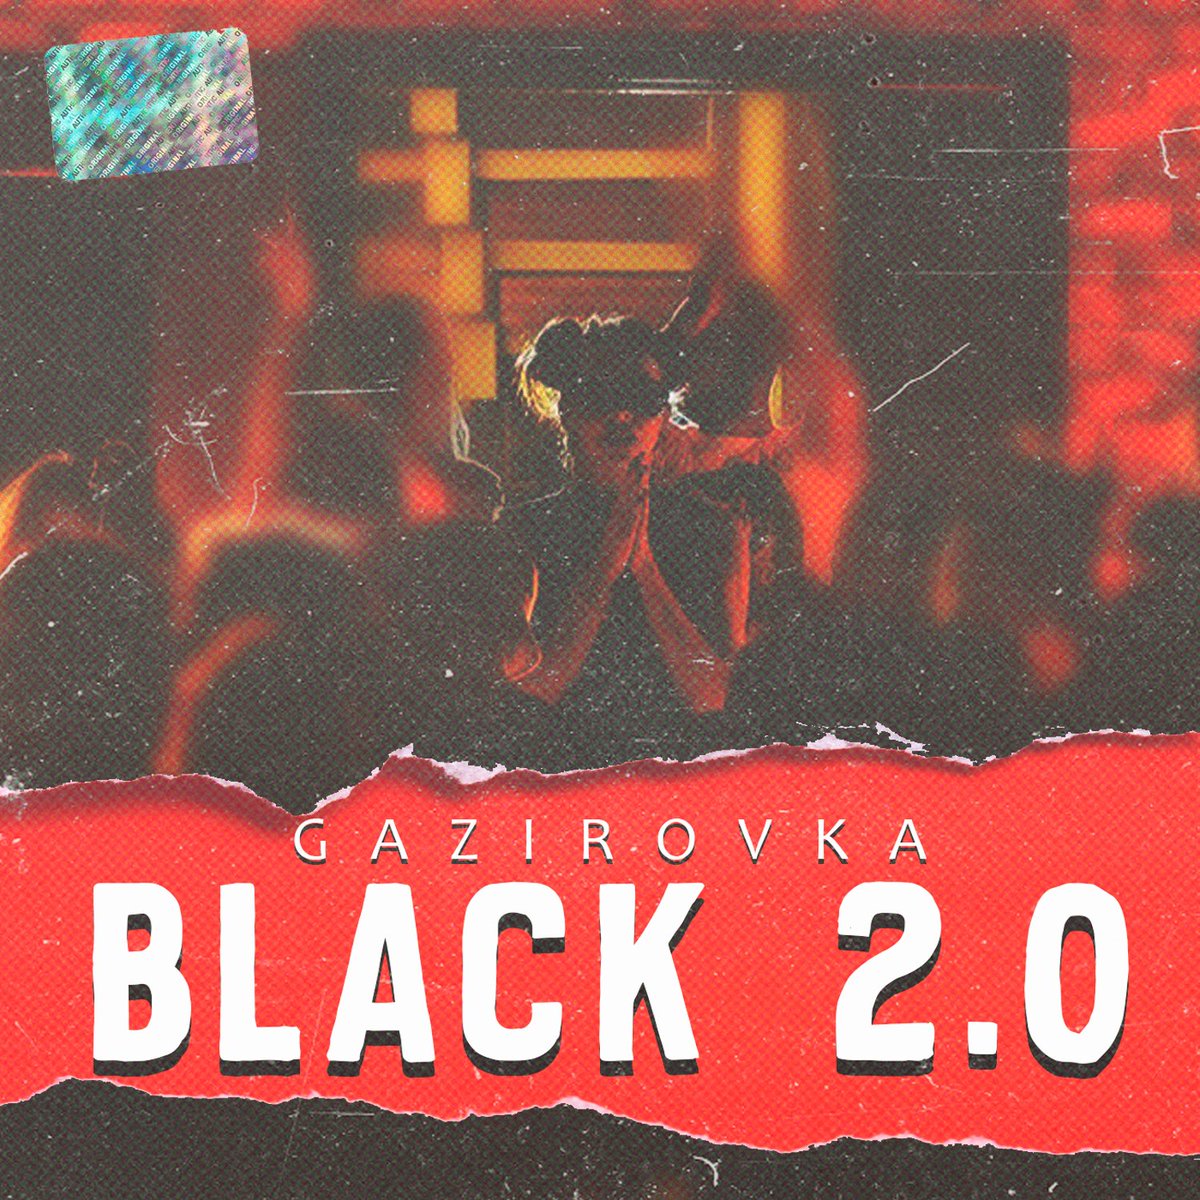 Gazirovka — Black 2.0 cover artwork